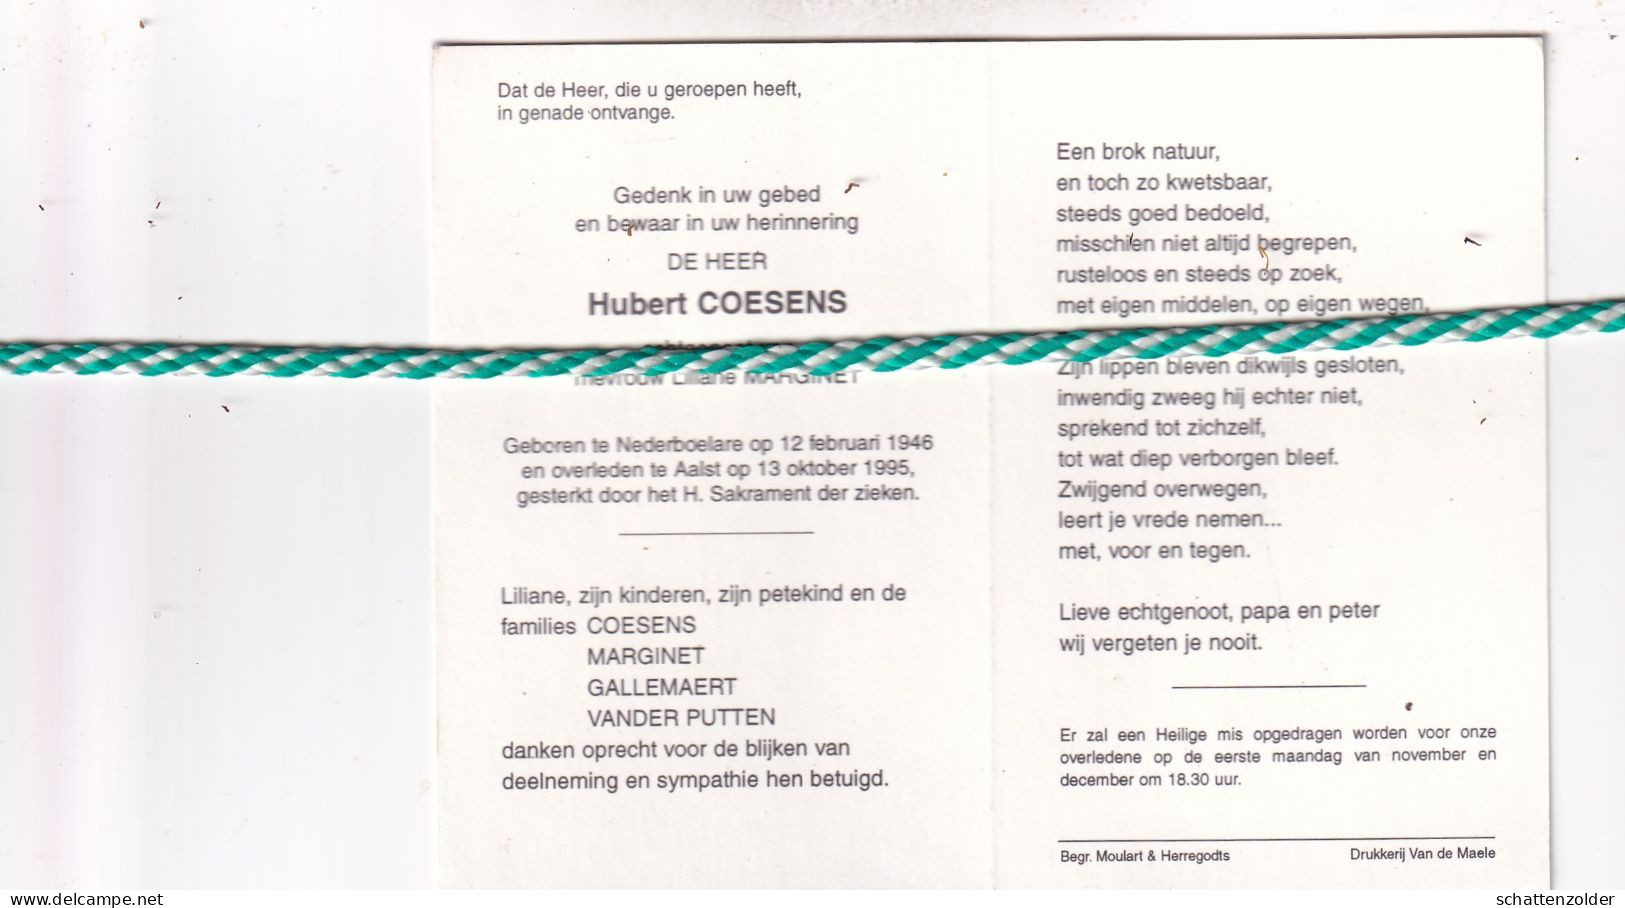 Hubert Coesens-Marginet, Nederboelare 1946, Aalst 1995. Foto - Overlijden